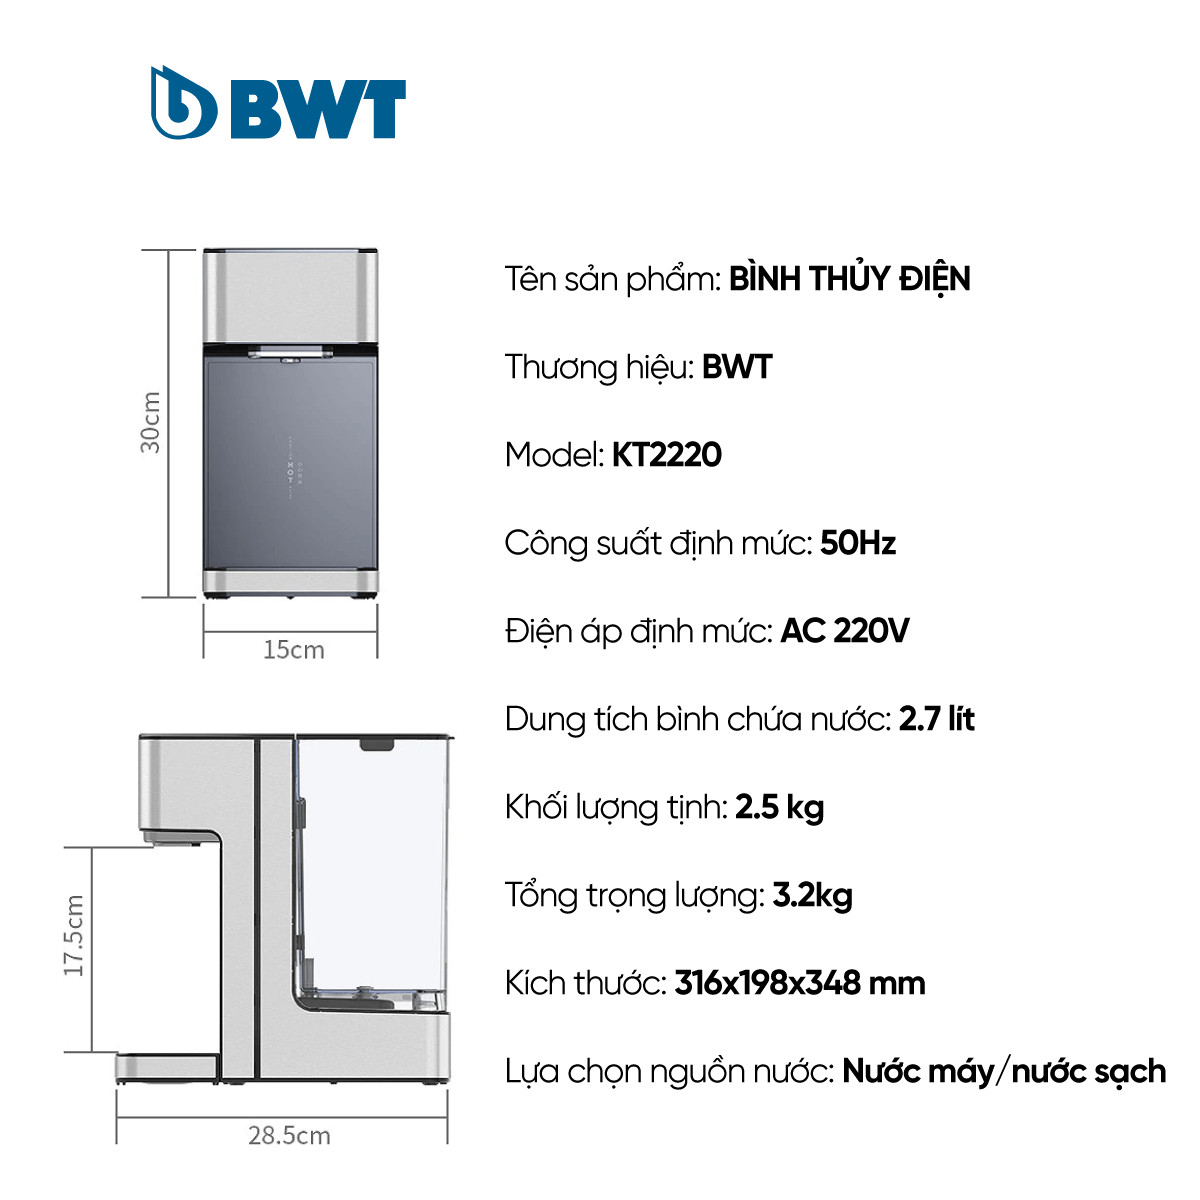 Bình thủy điện BWT KT2220 thiết kế hiện đại thay lõi lọc dễ dàng không rò rỉ nước